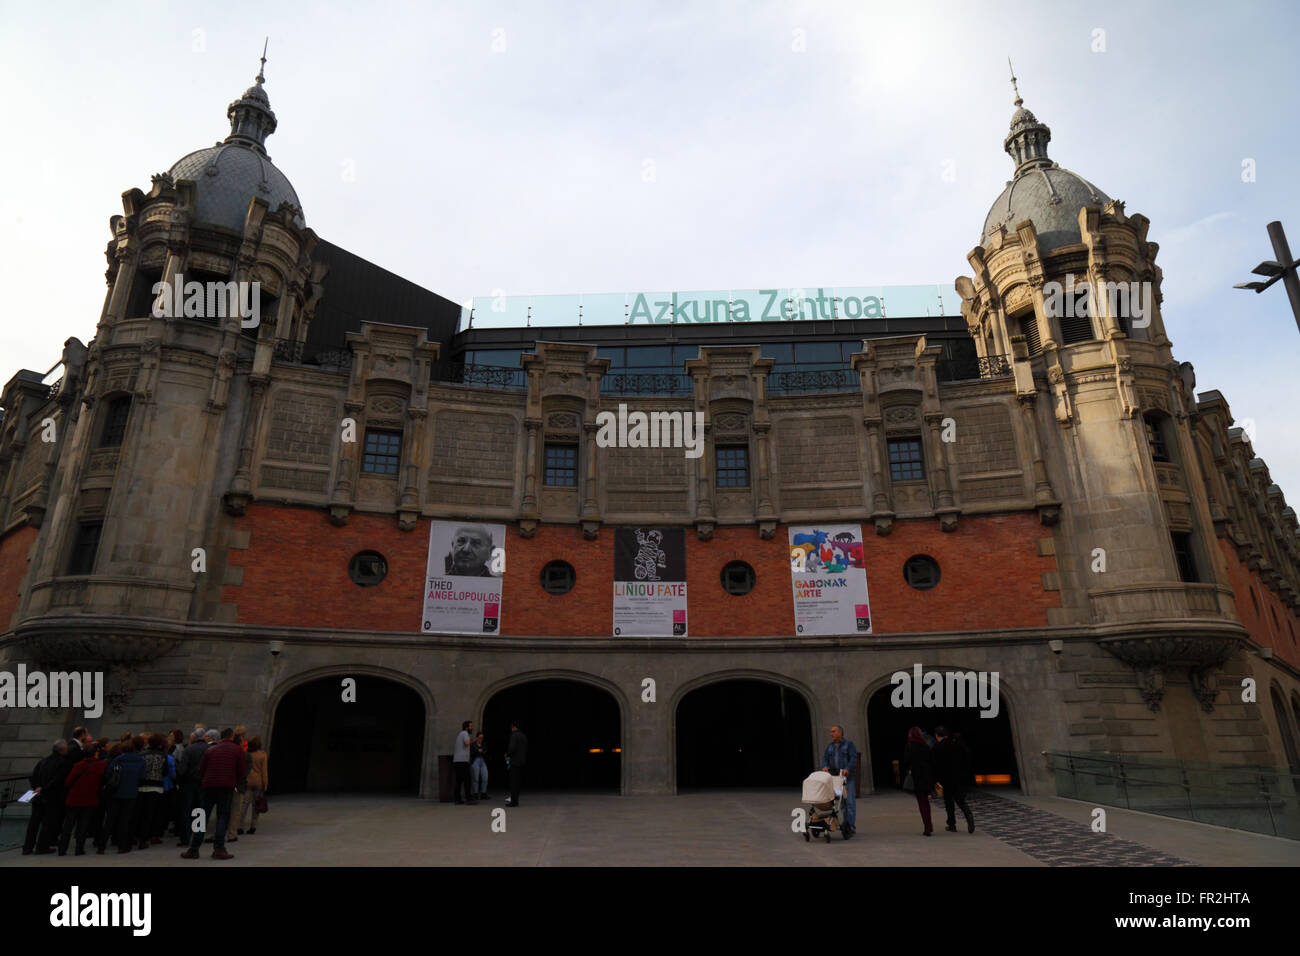 Entrée principale de l'édifice, maintenant l'Alhondiga Azkuna Zentroa centre culturel, Bilbao, Pays Basque, Espagne Banque D'Images